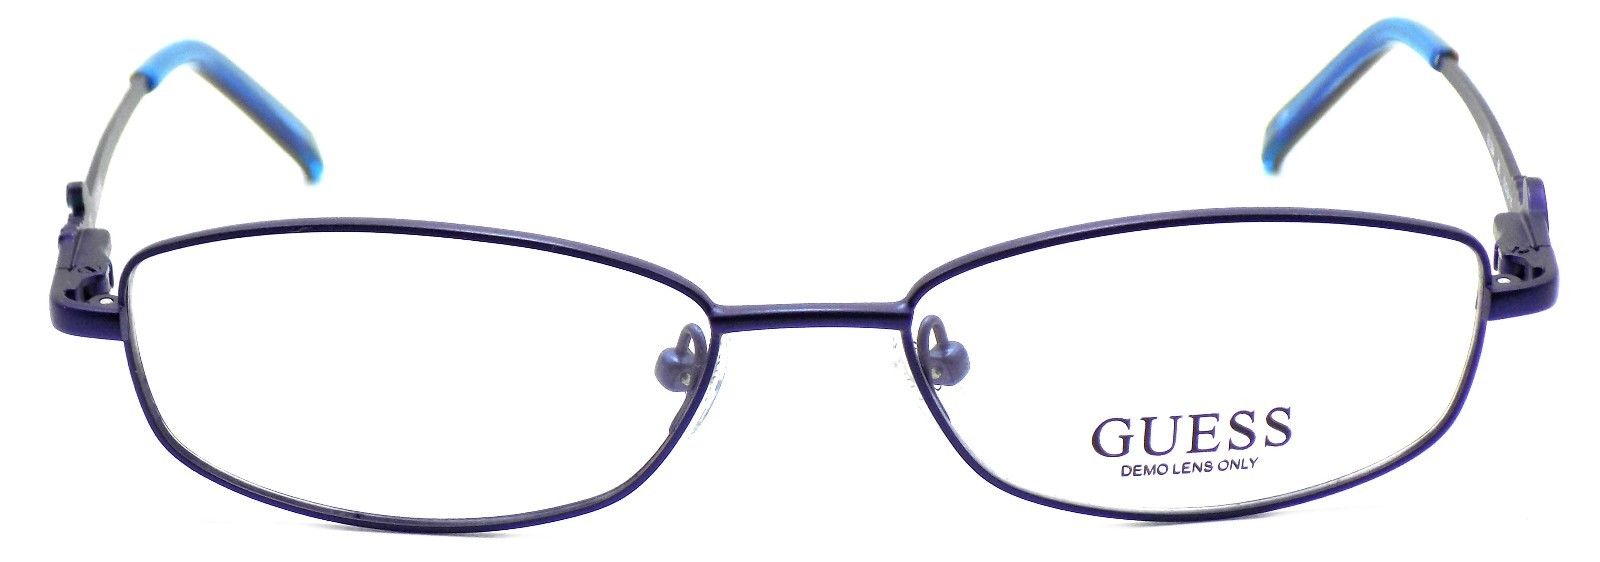 2-GUESS GU2284 BL Women's Eyeglasses Frames 51-16-135 Blue + CASE-715583443129-IKSpecs